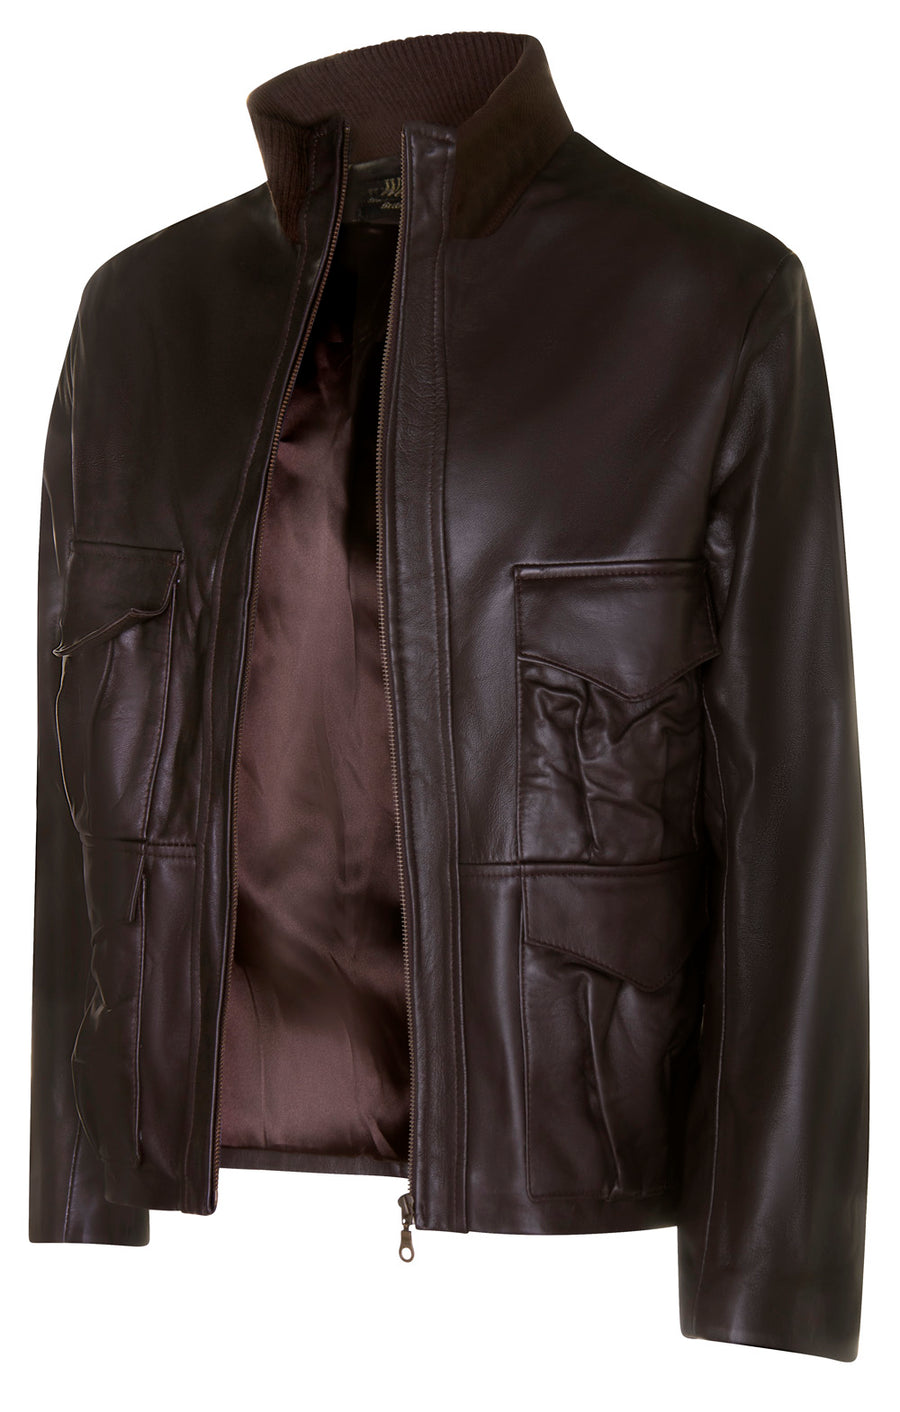 CUSTOM MADE Casino Royale Style Leather Jacket